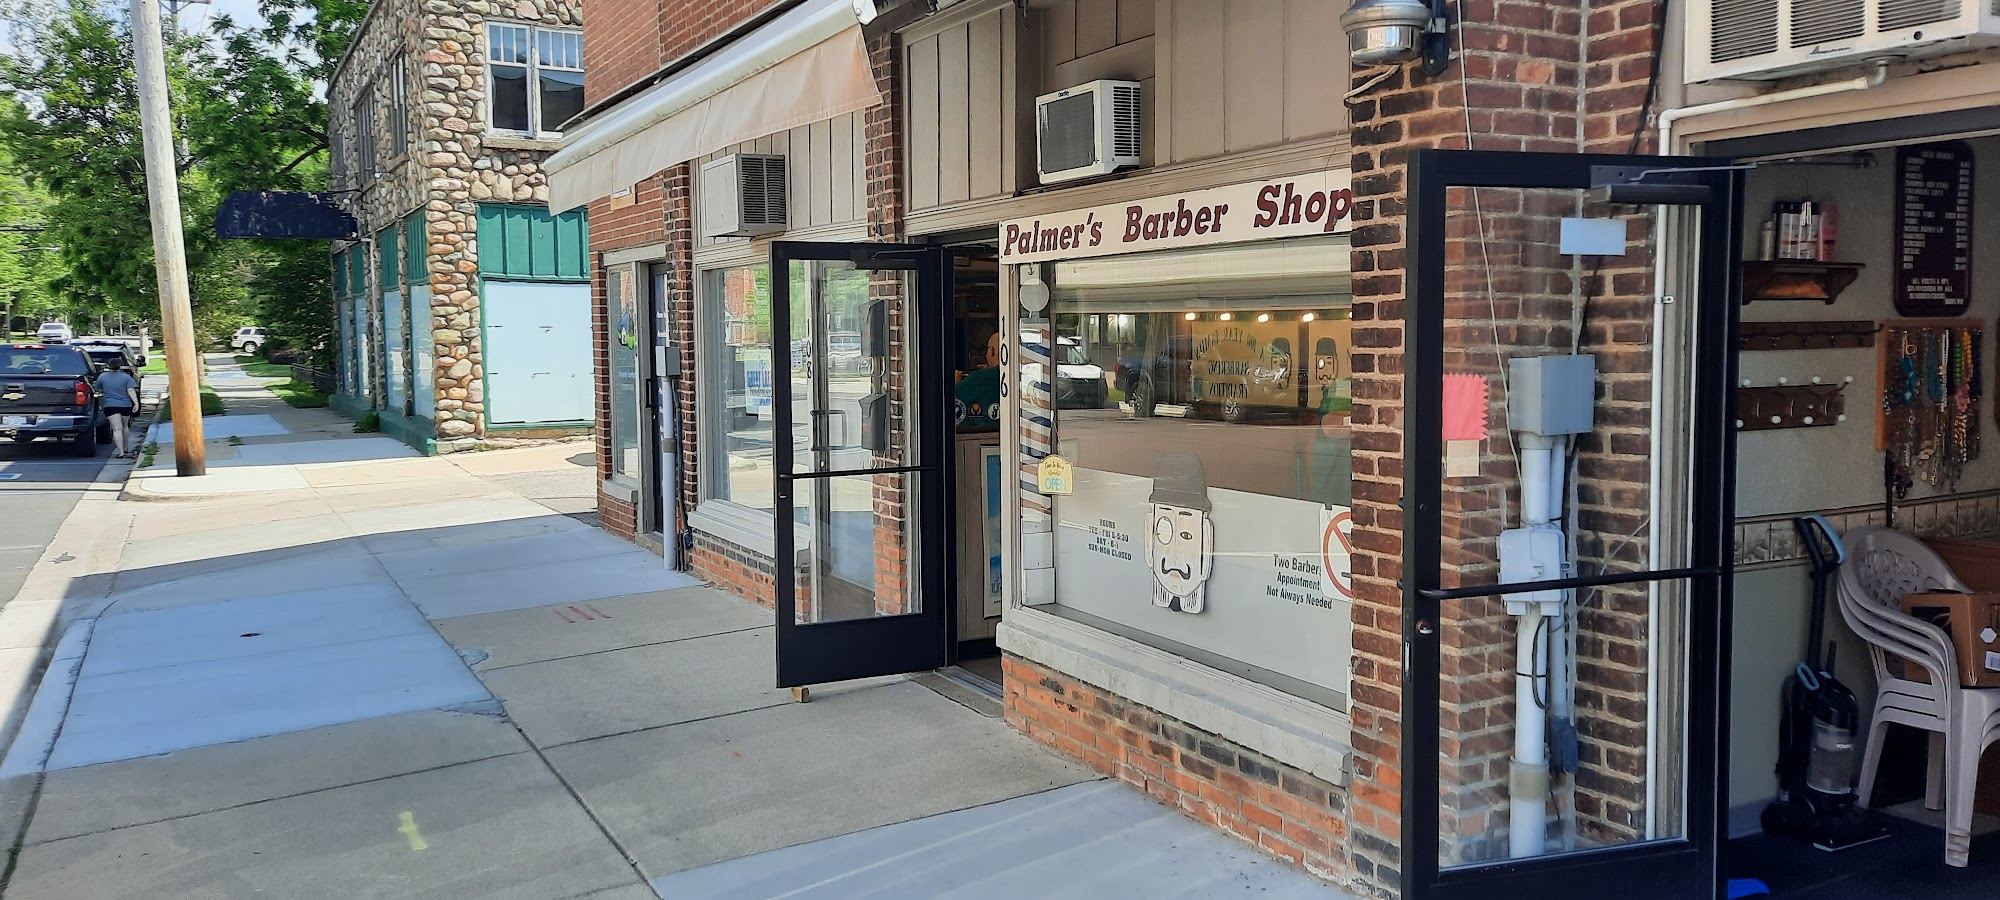 Palmer's Barber Shop